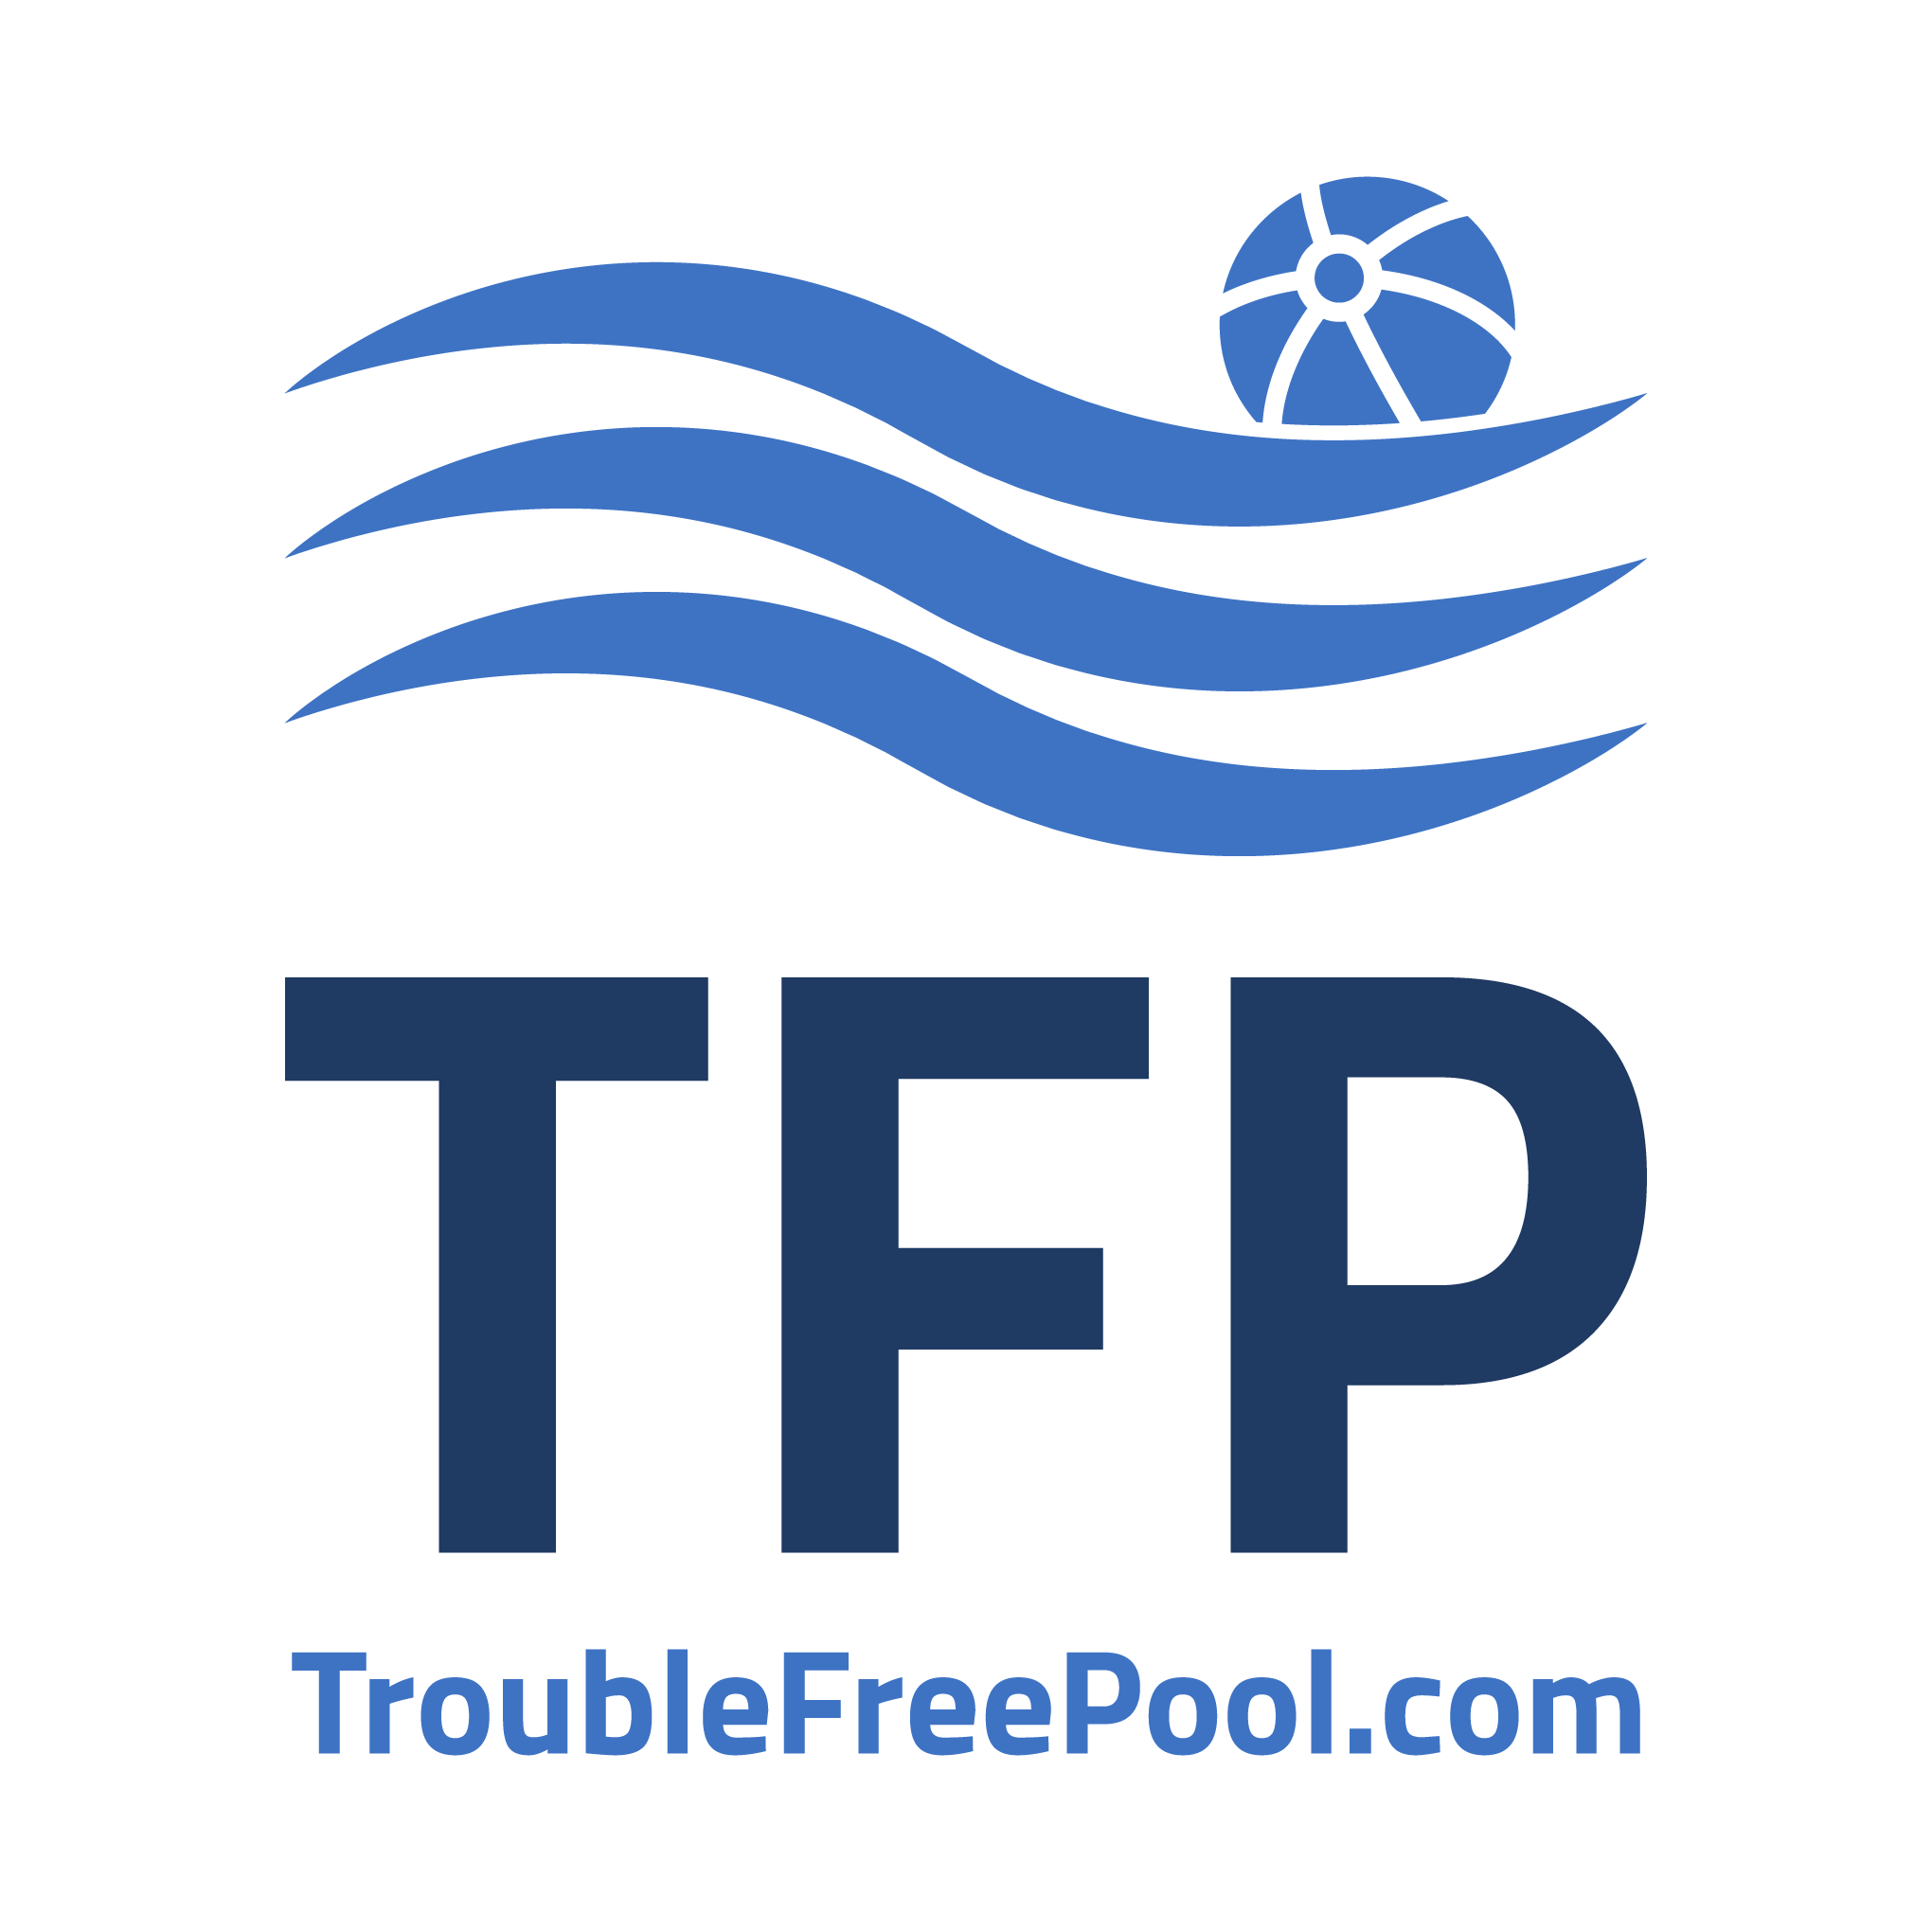 www.troublefreepool.com